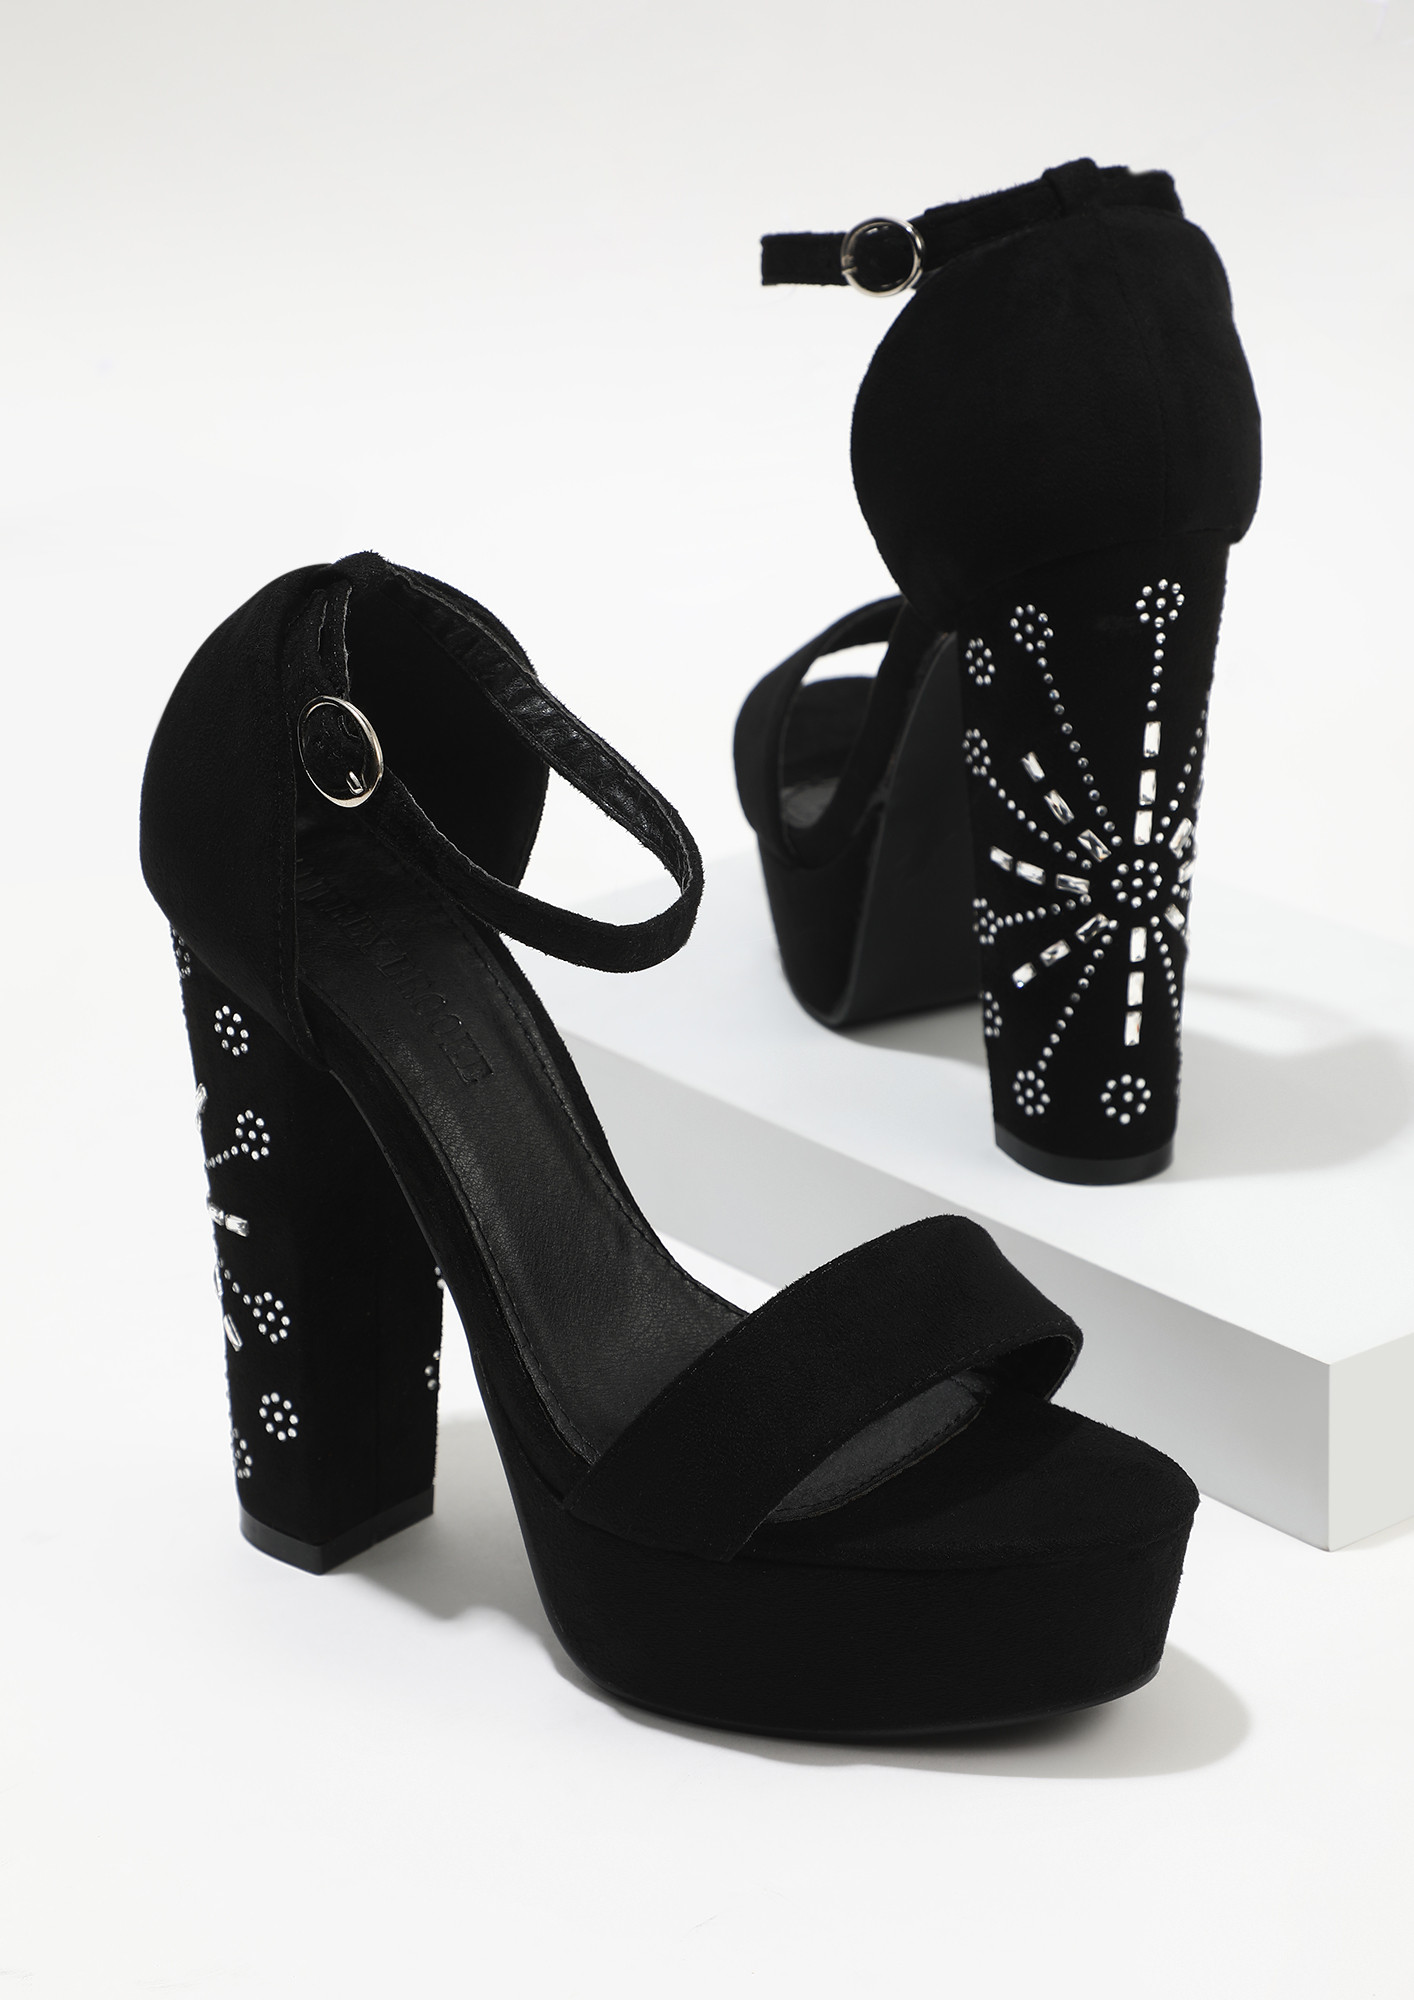 High Heel Sandals for sale - Womens Heel Sandals brands, prices & deals  online | Lazada Philippines